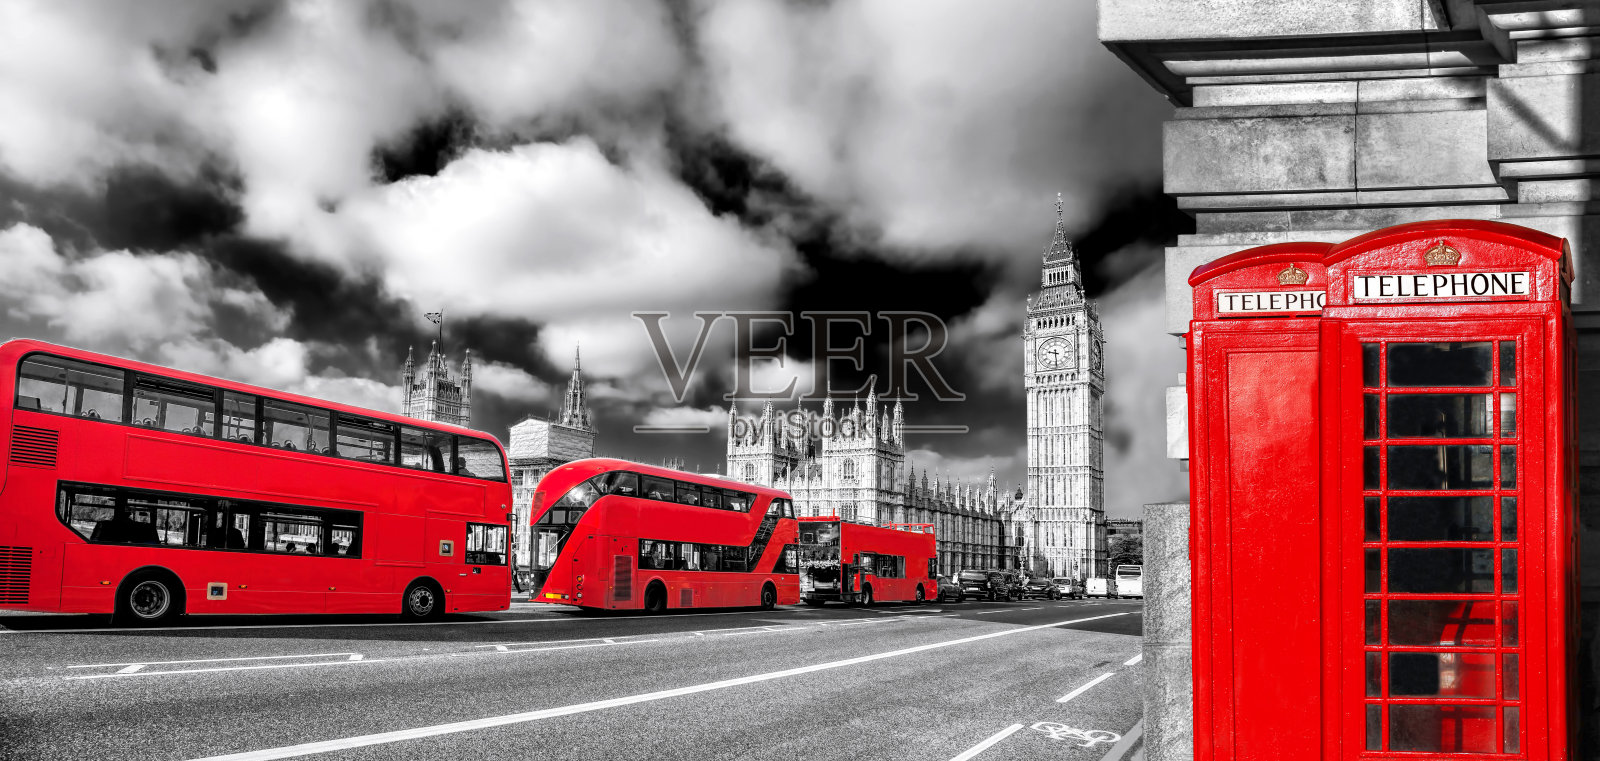 英国伦敦的标志有大本钟、双层公共汽车和红色电话亭照片摄影图片